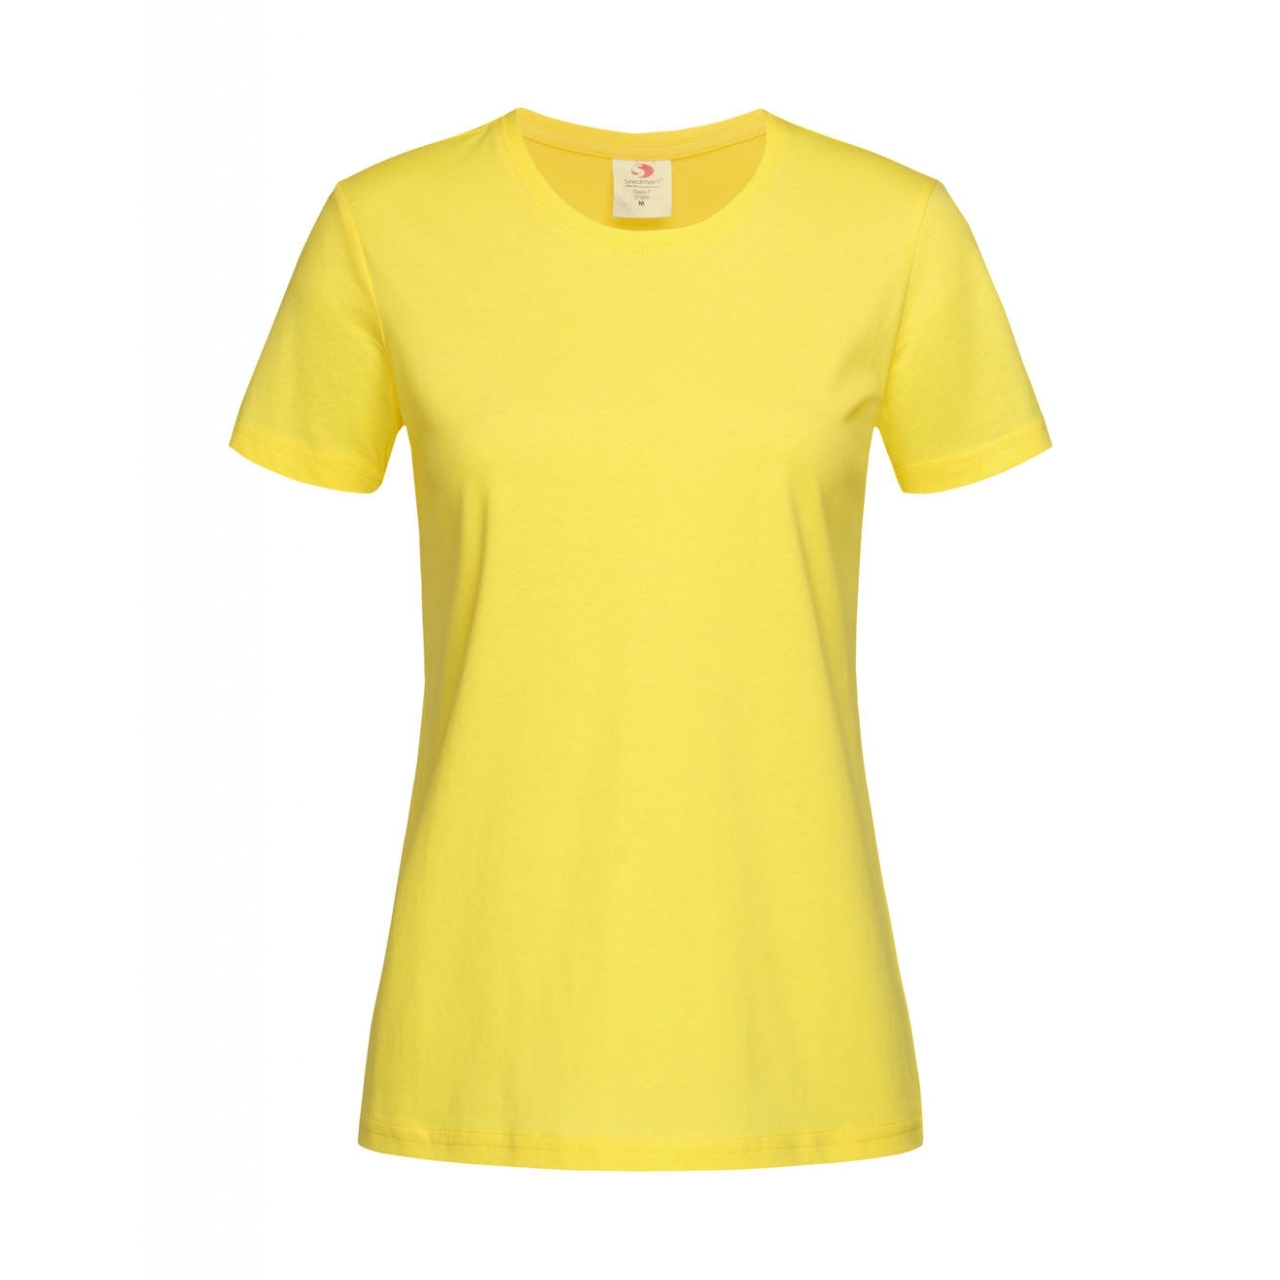 Tričko dámské Stedman Fitted s kulatým výstřihem - žluté, S